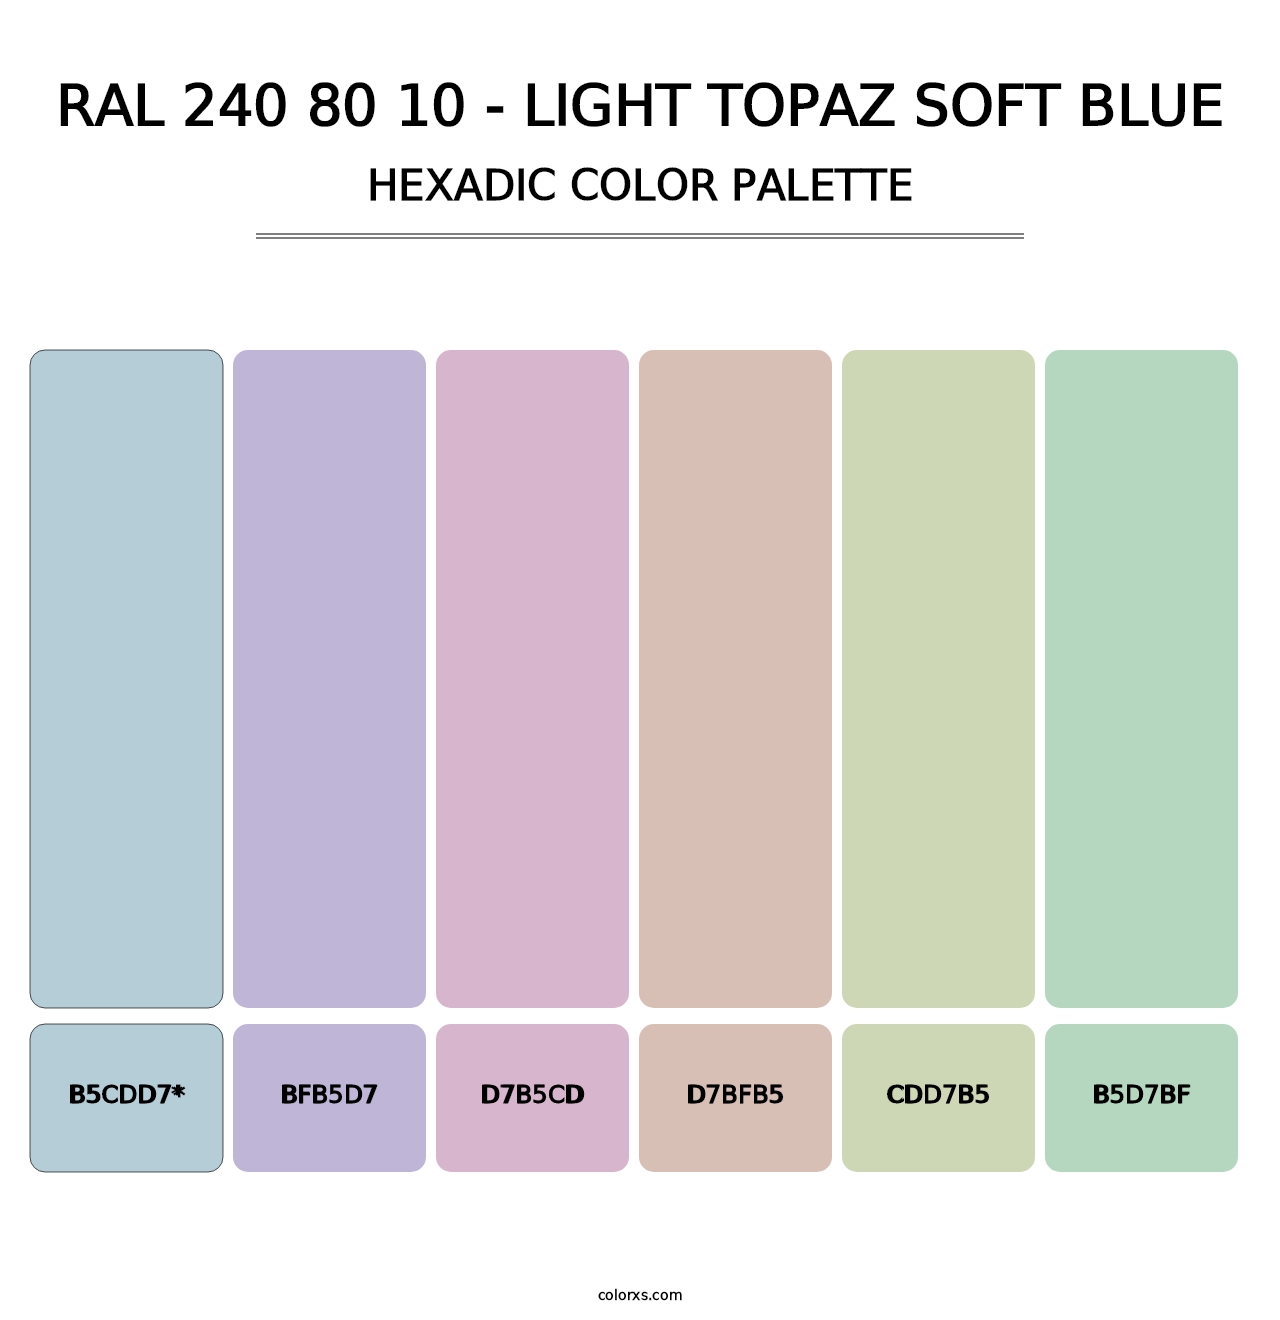 RAL 240 80 10 - Light Topaz Soft Blue - Hexadic Color Palette